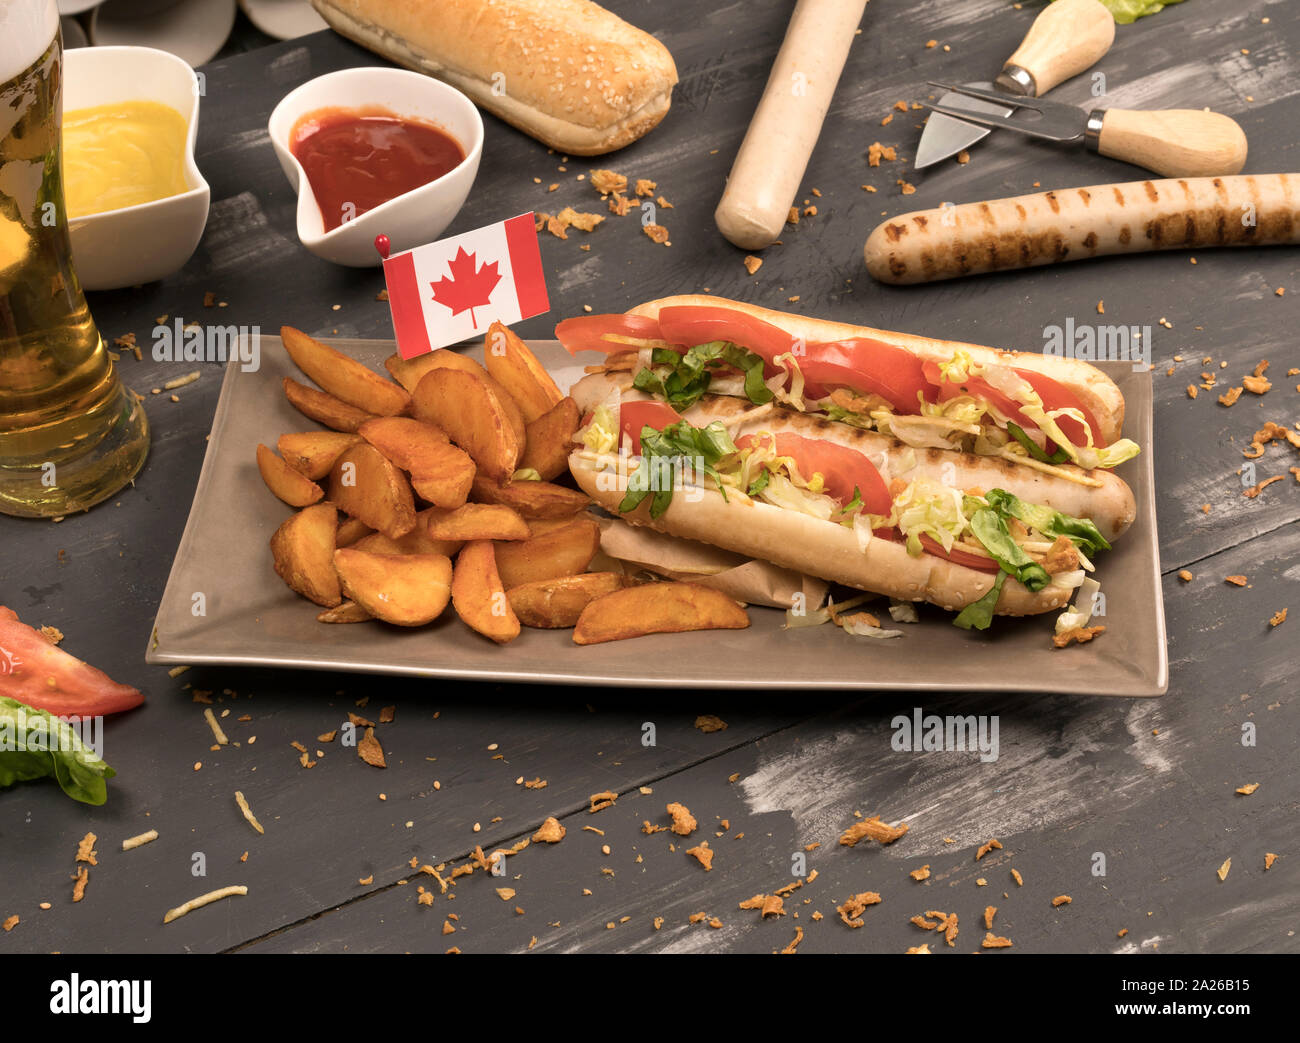 Perro caliente casero con salchichas blancas con diversos condimentos vista delantera del tablero de madera gris y Canadá bandera Foto de stock